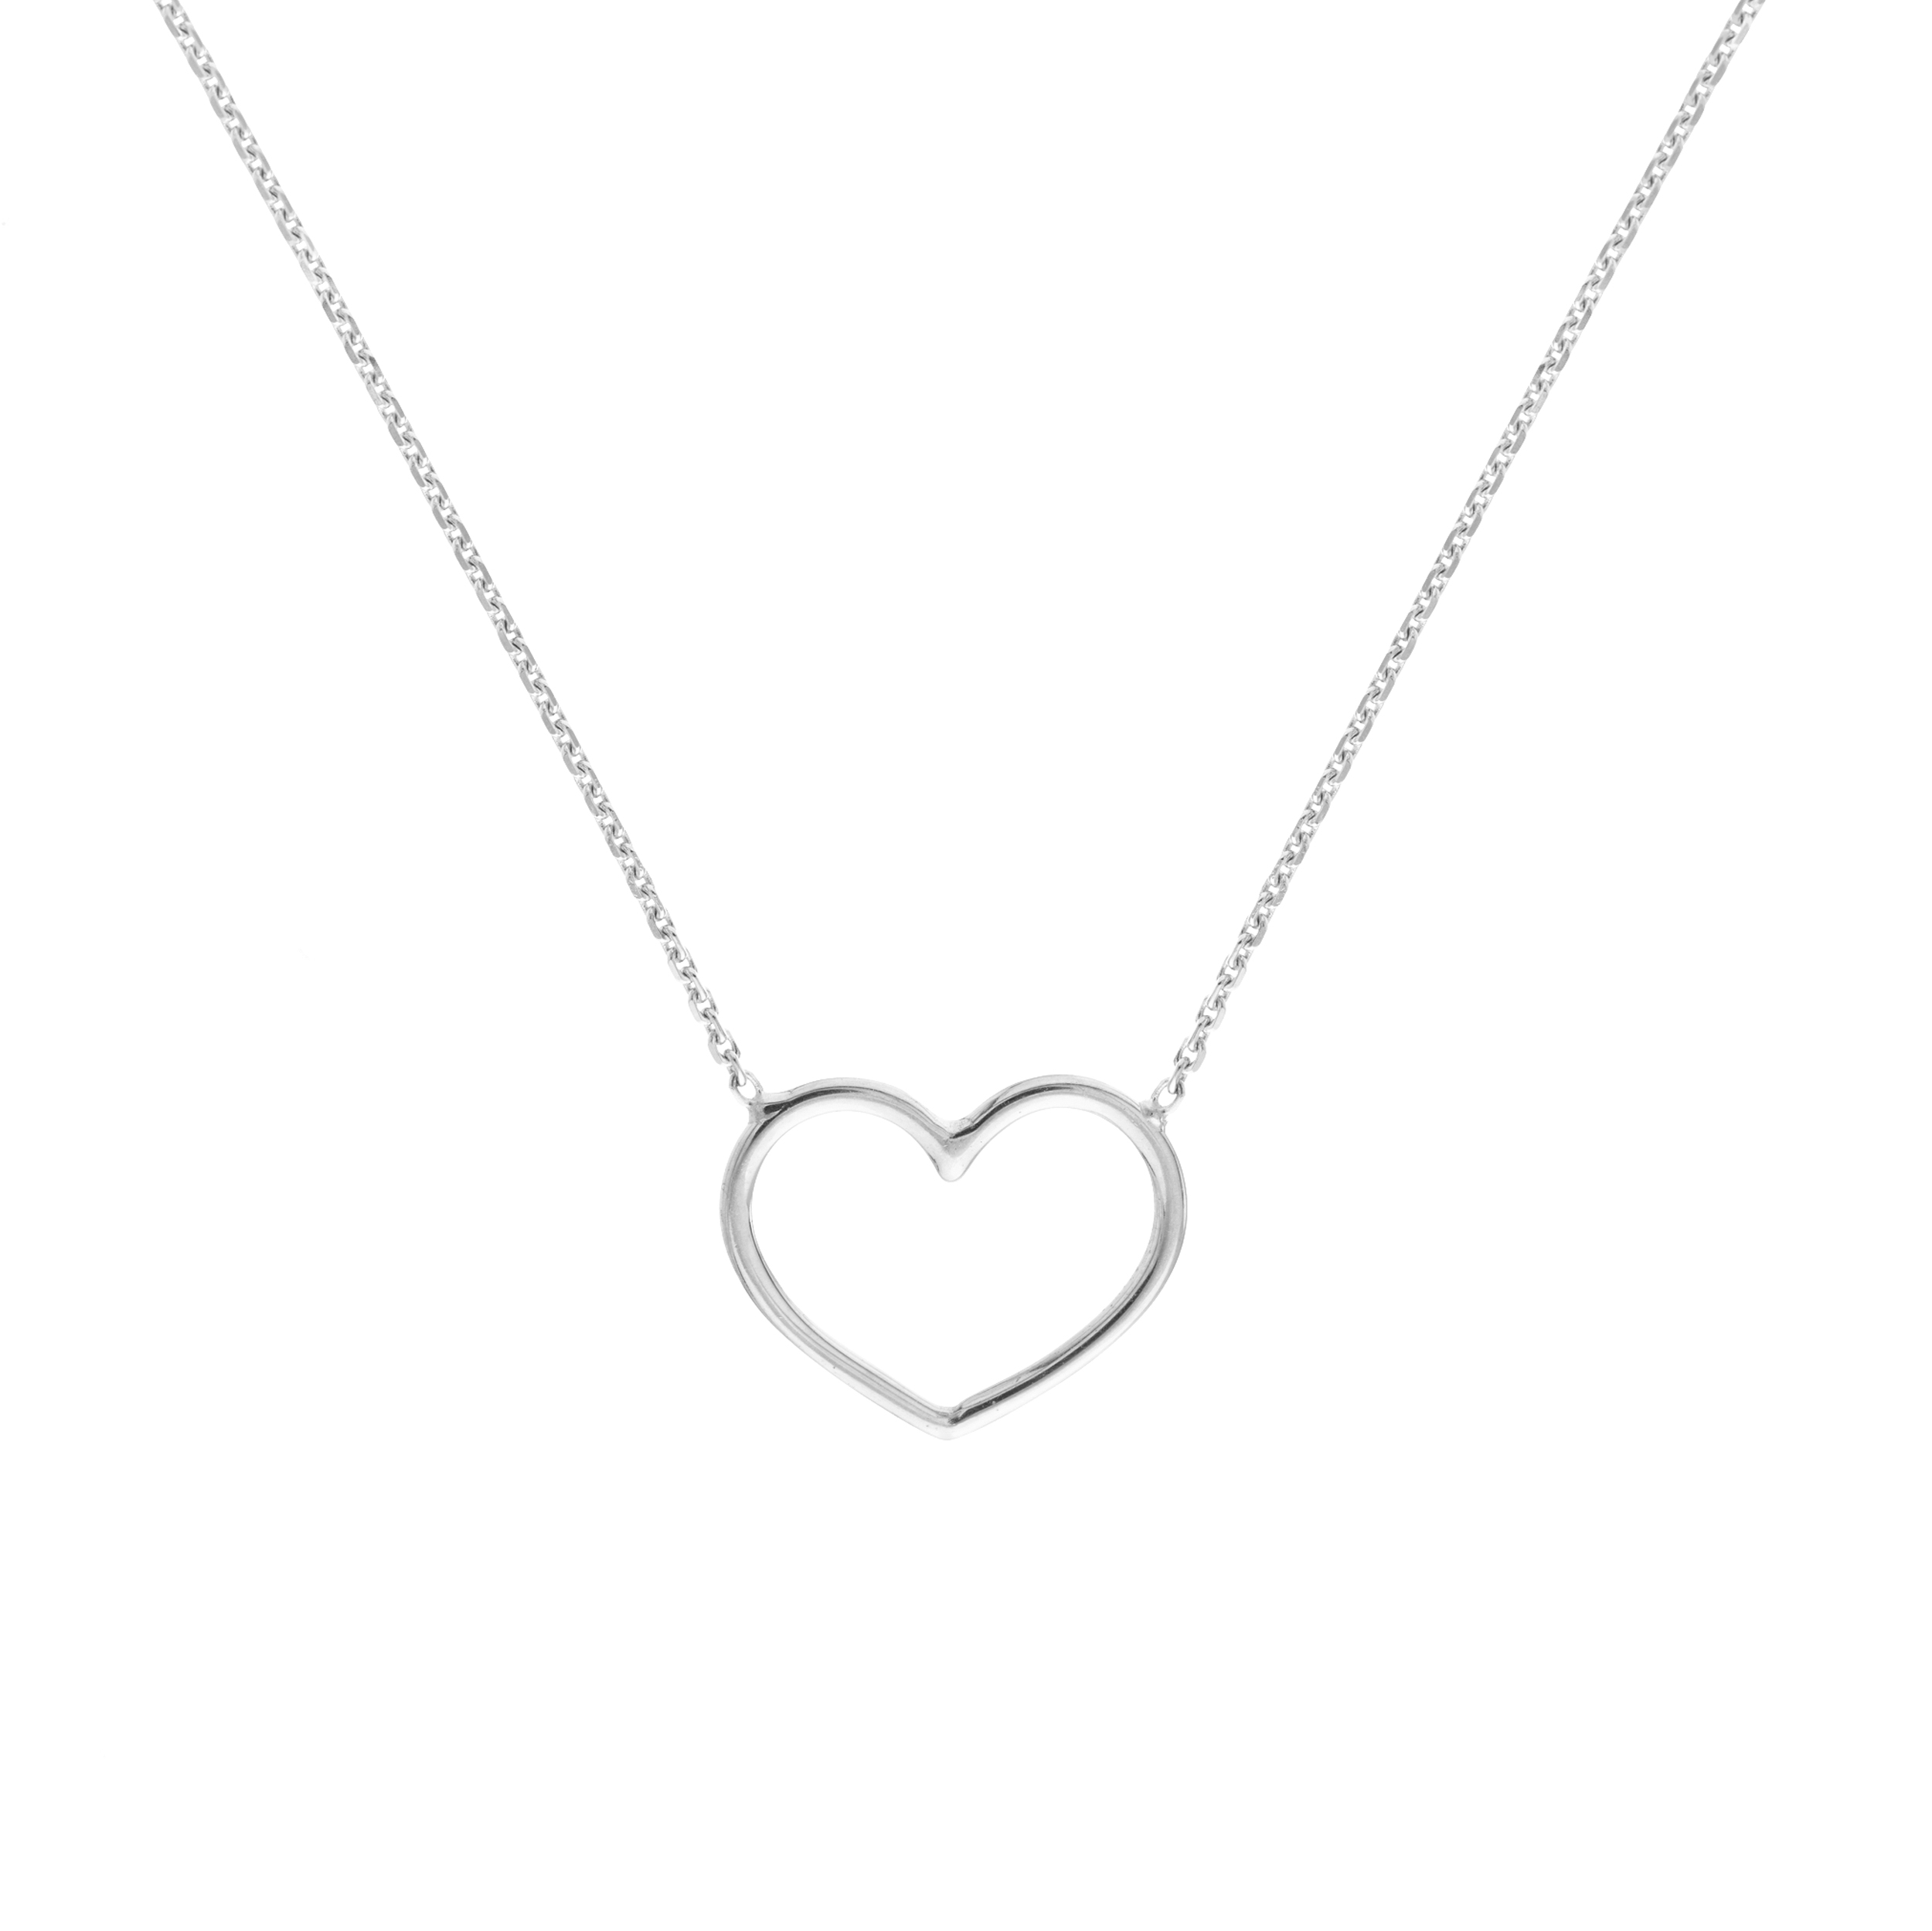 14 karat white gold heart necklace